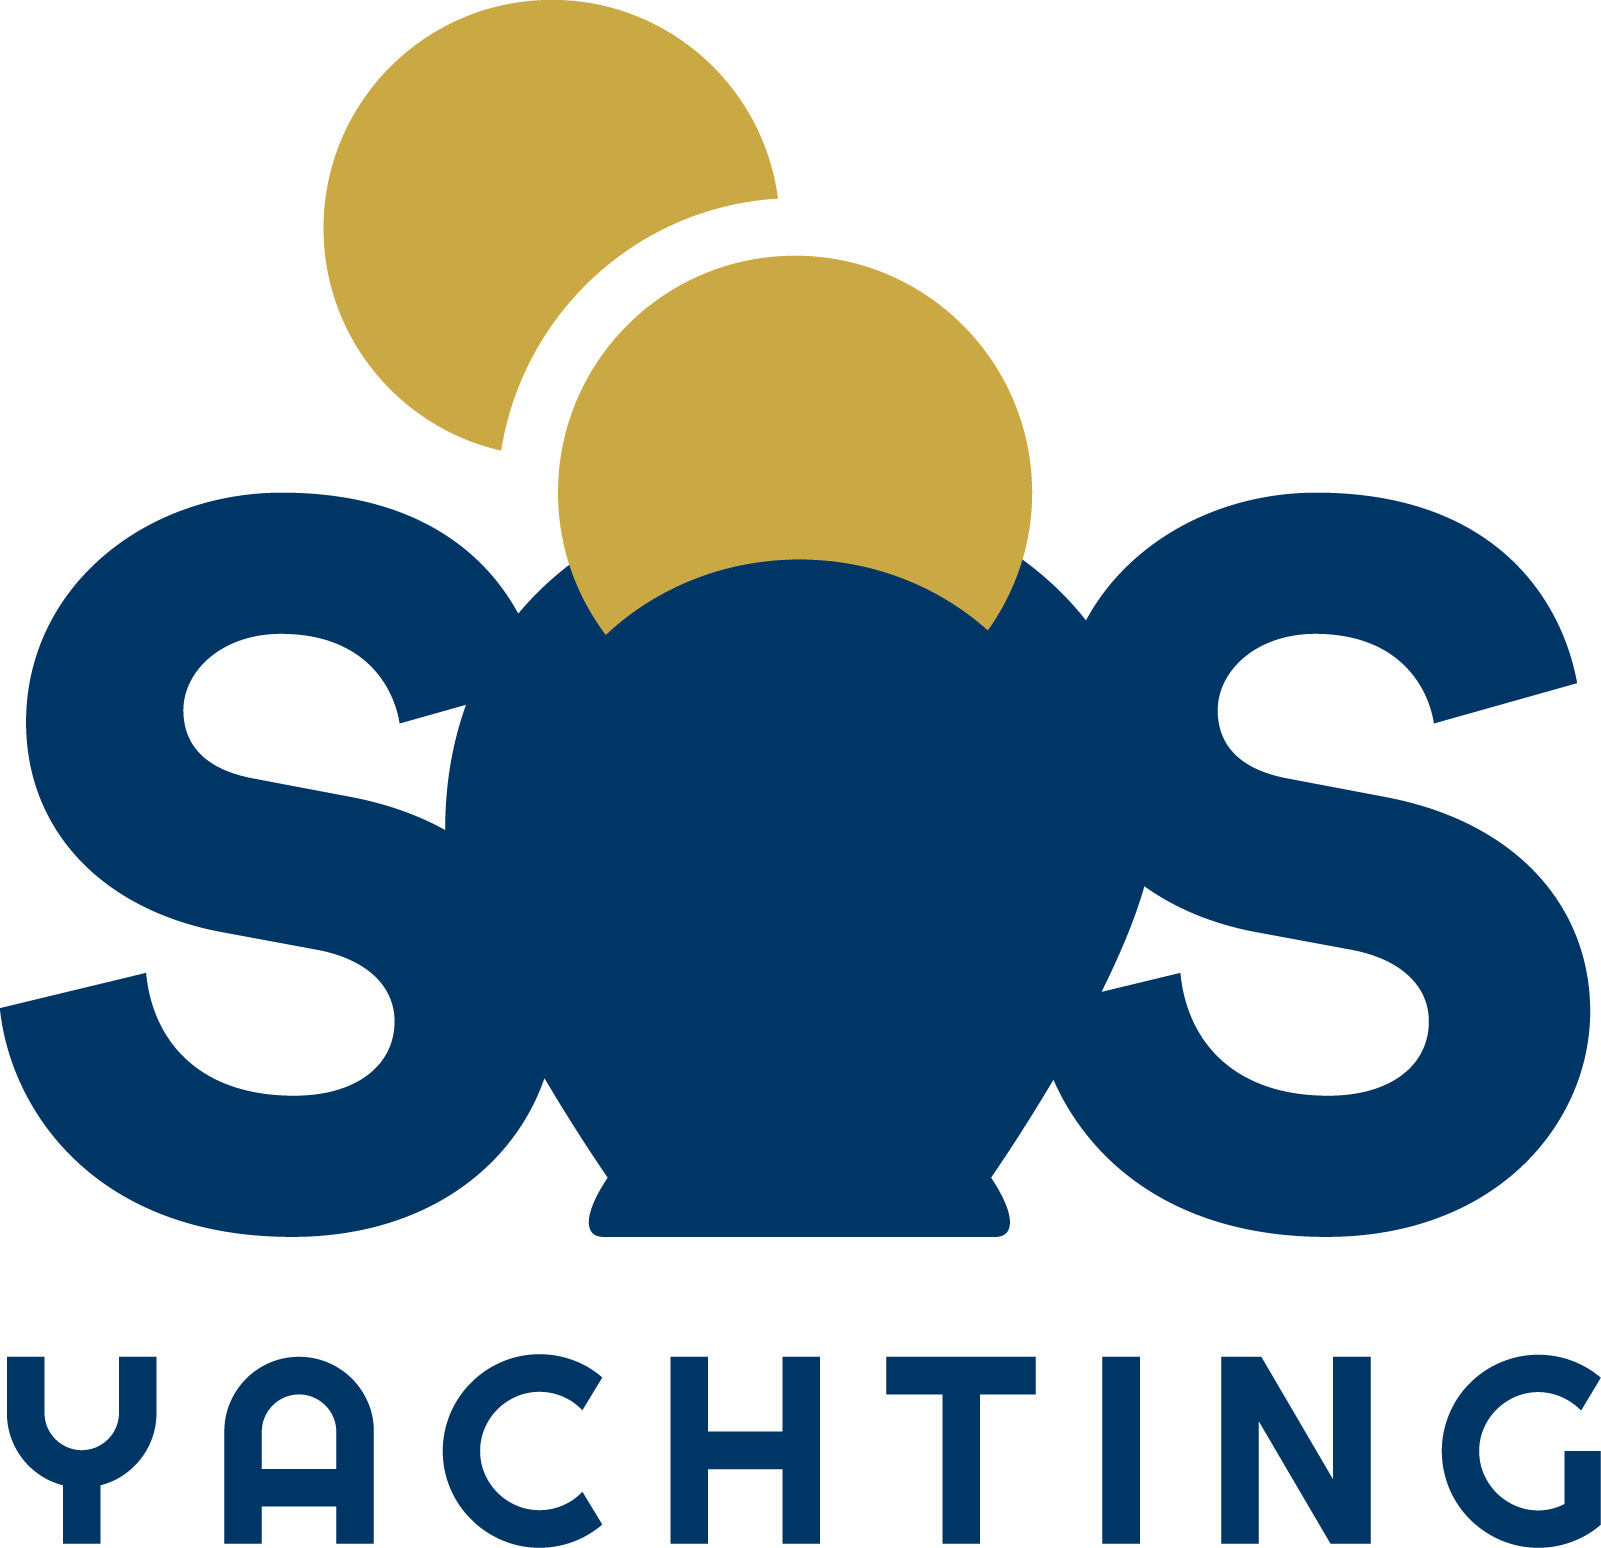 SOS Yachting logo